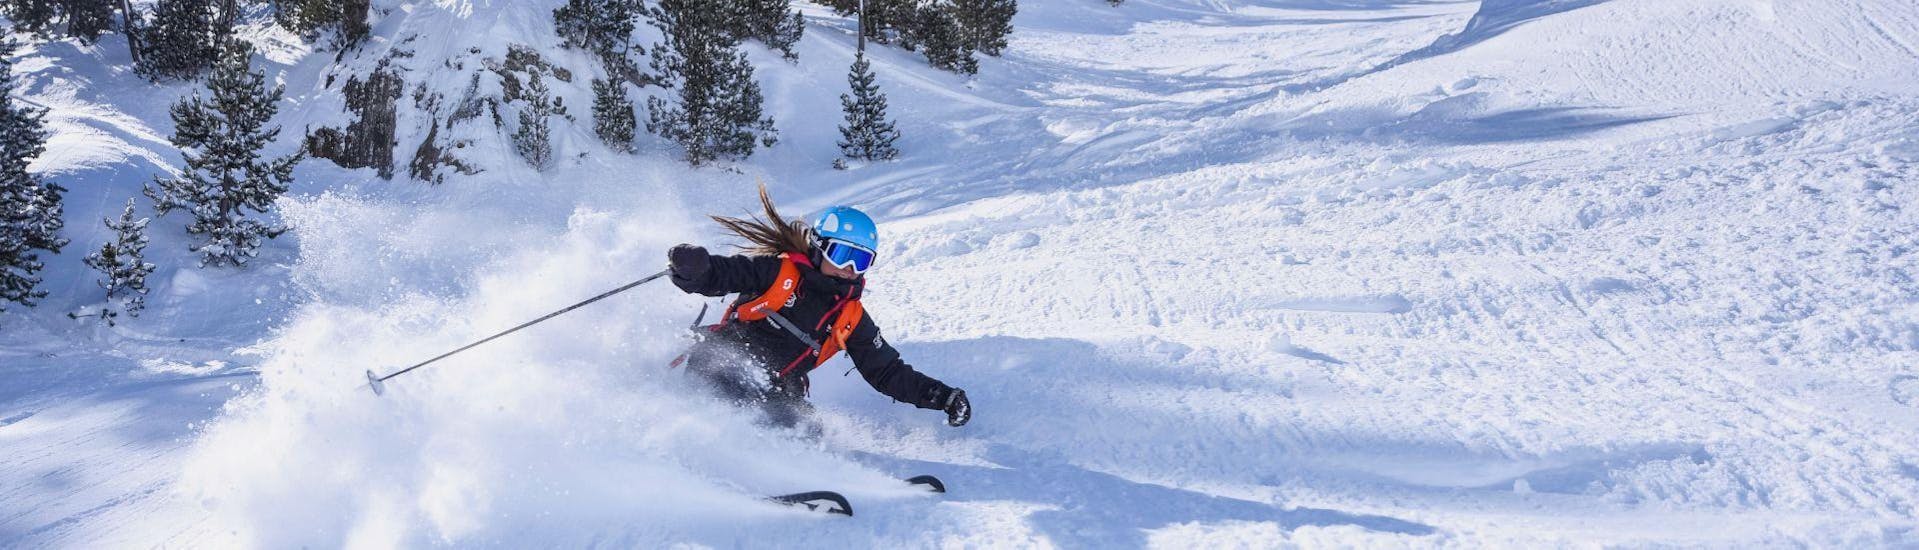 Eine Skilehrerin der Escuela Ski Cerler fährt elegant und sportlich die Piste bergab während dem Skikurs für Erwachsene für alle Levels.